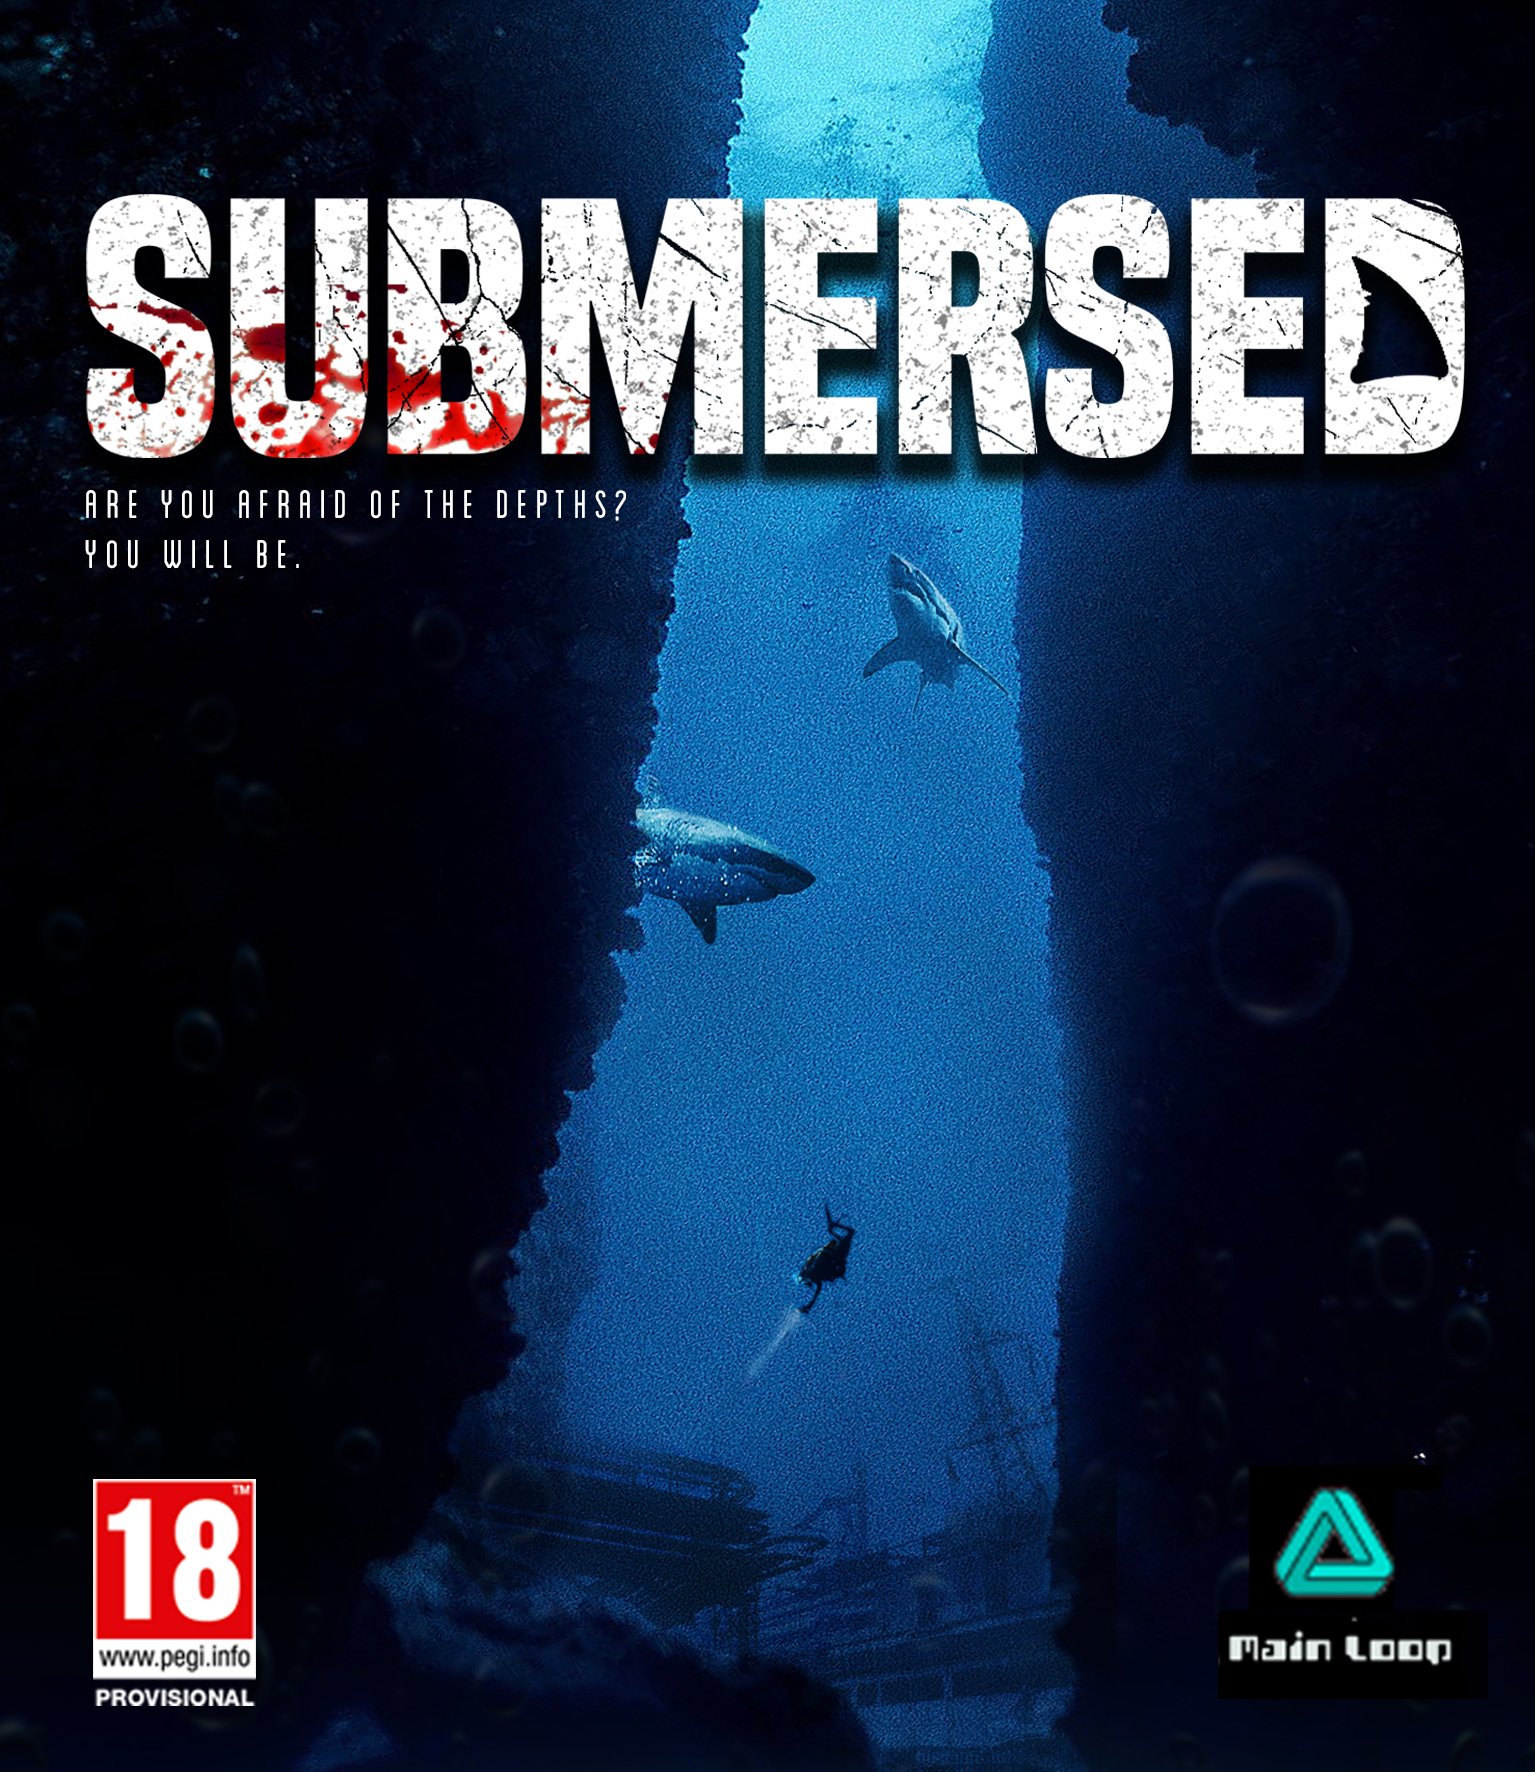 submersed